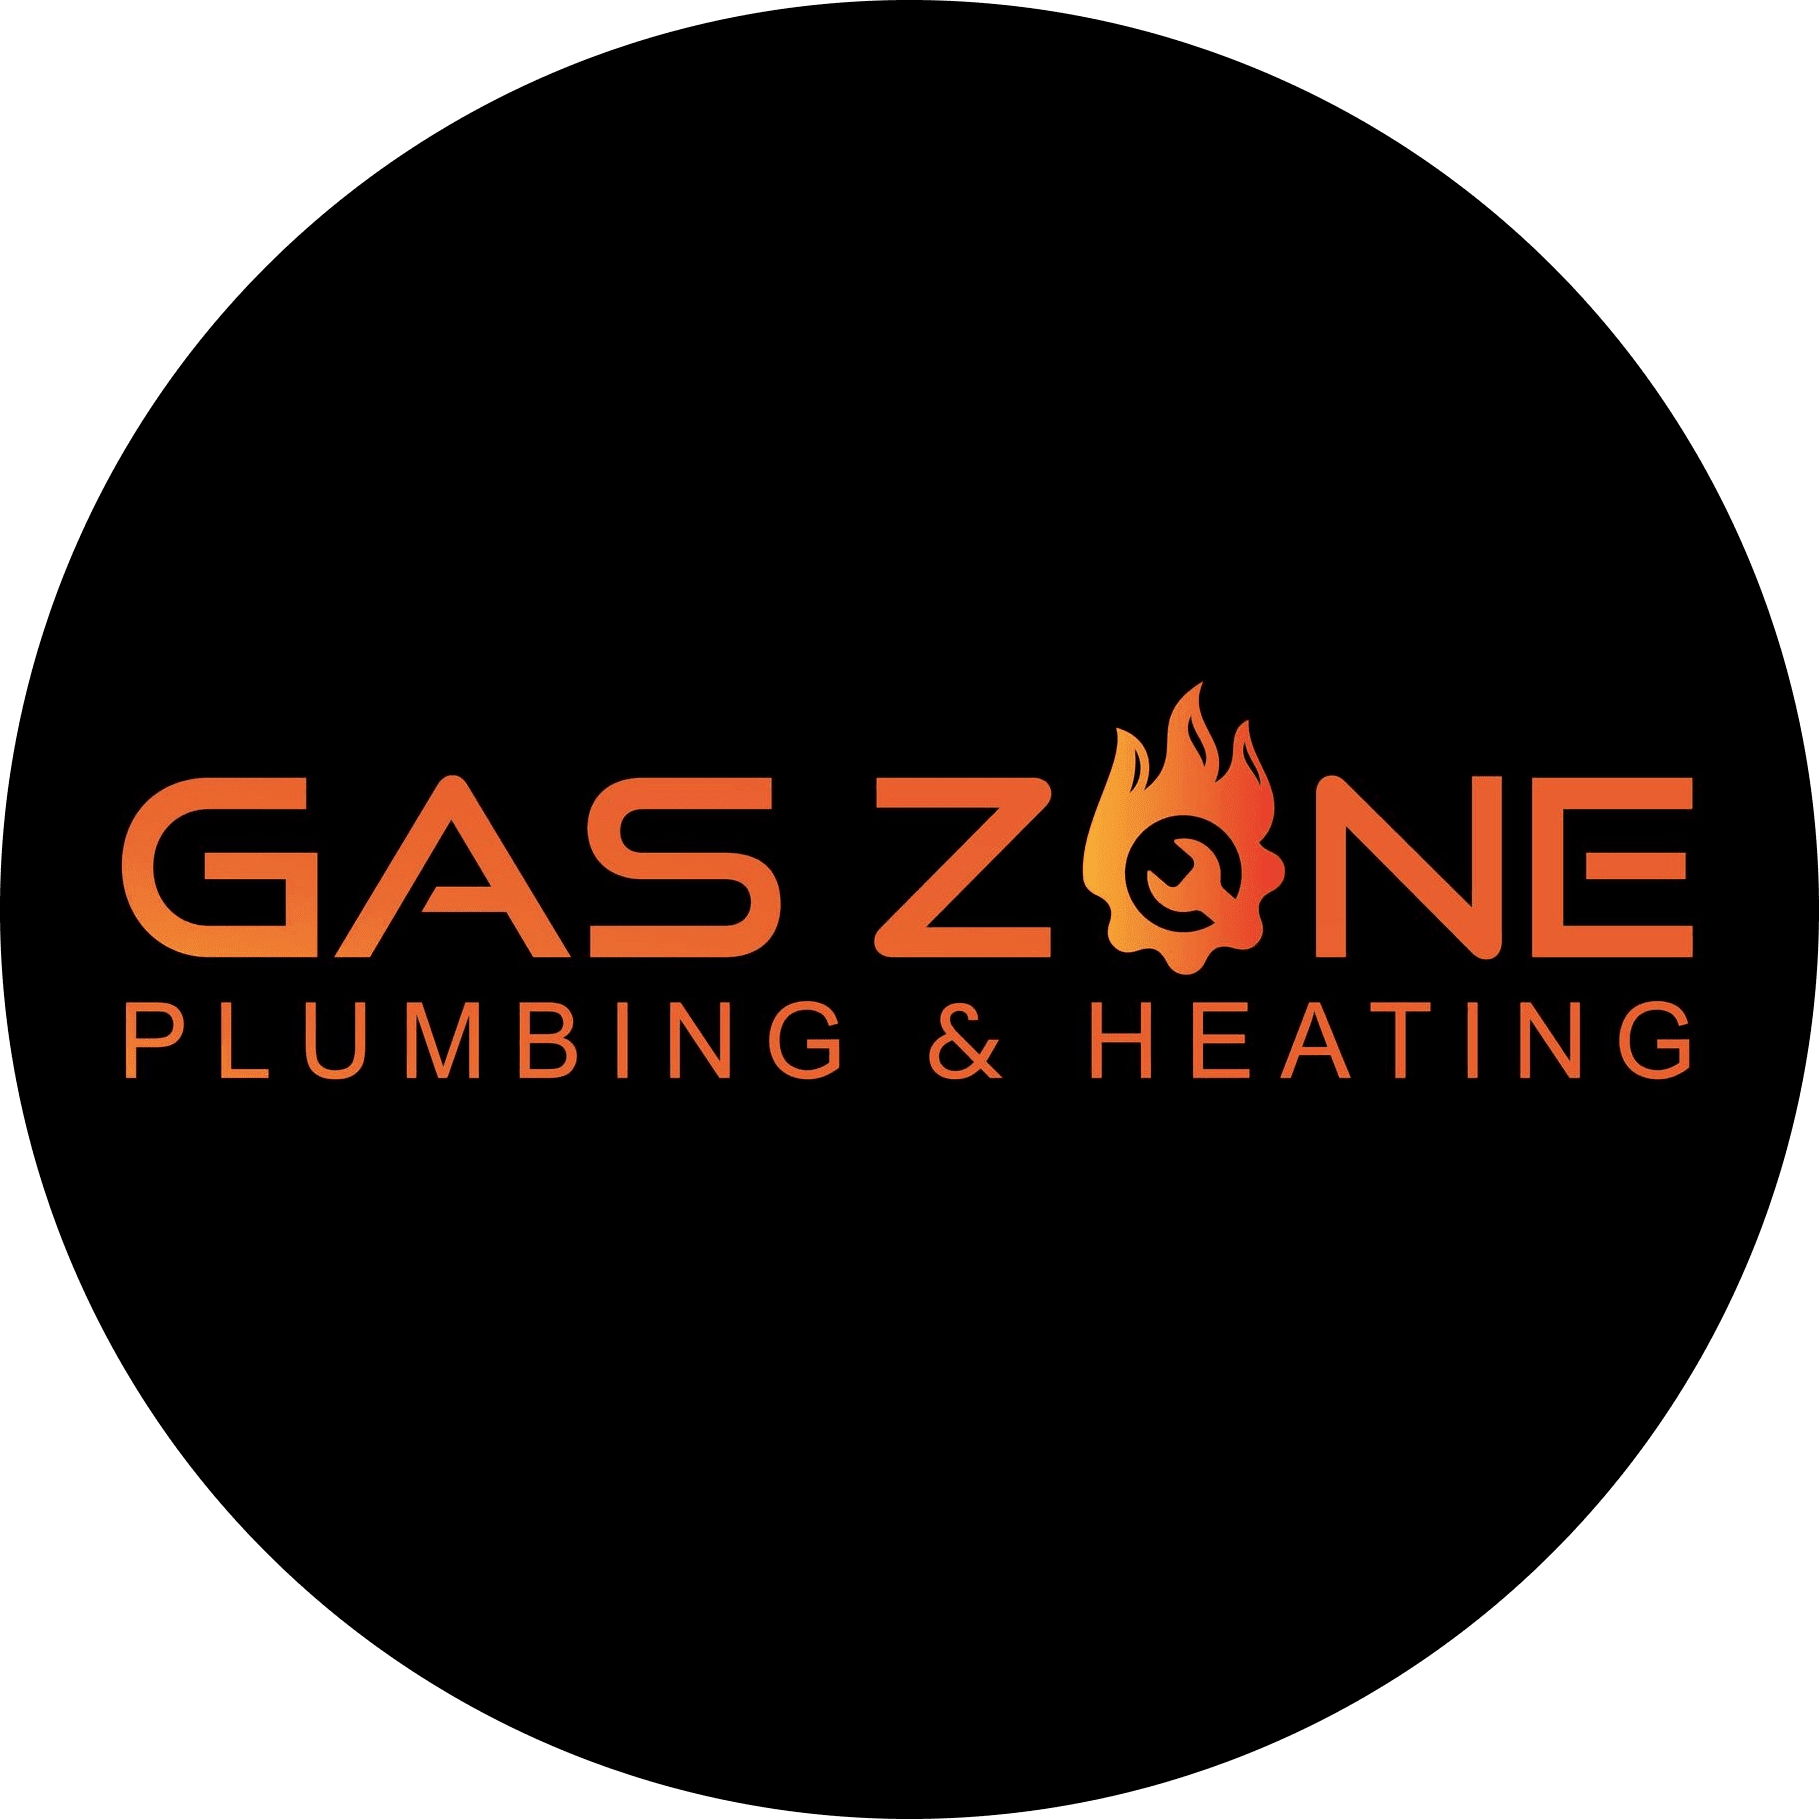 Gaszone Plumbing & Heating